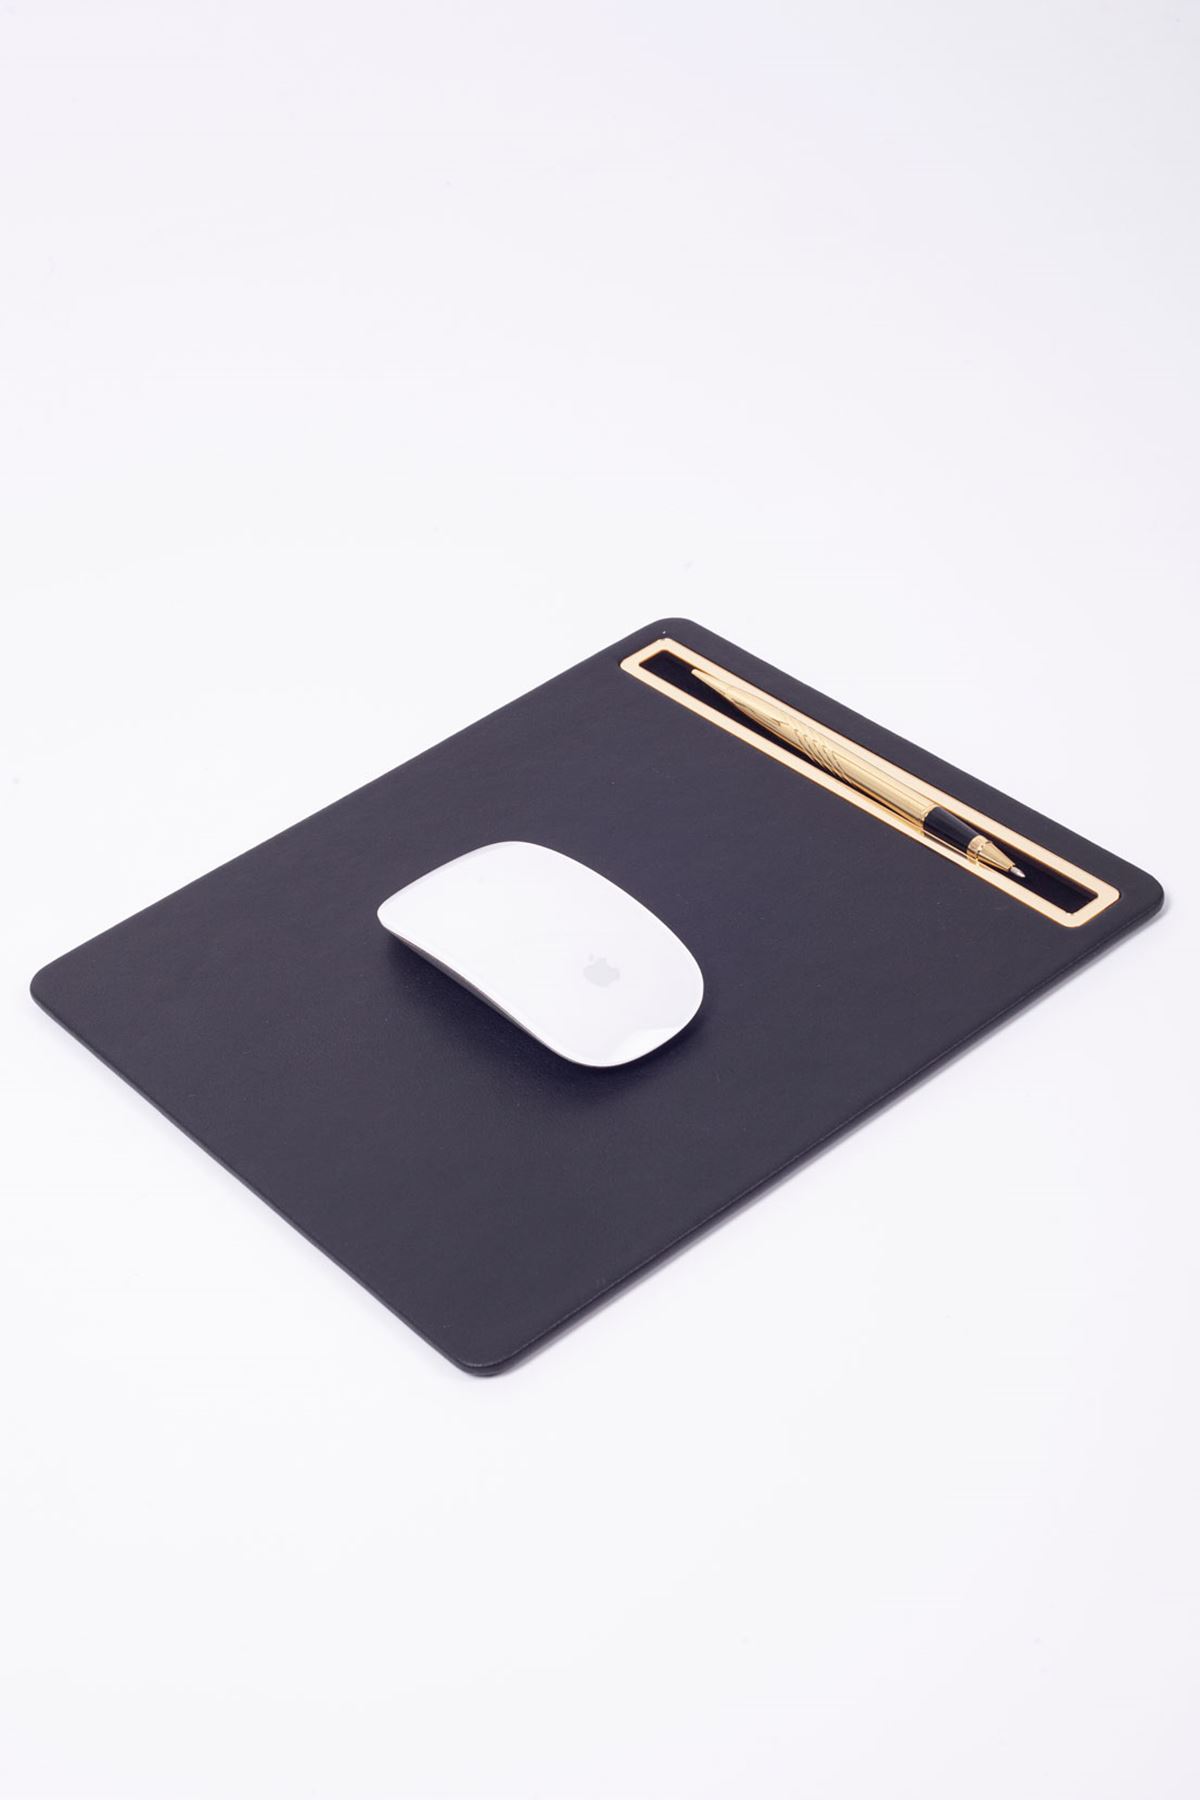 Deri Mousepad Düz Siyah Gold Detaylı